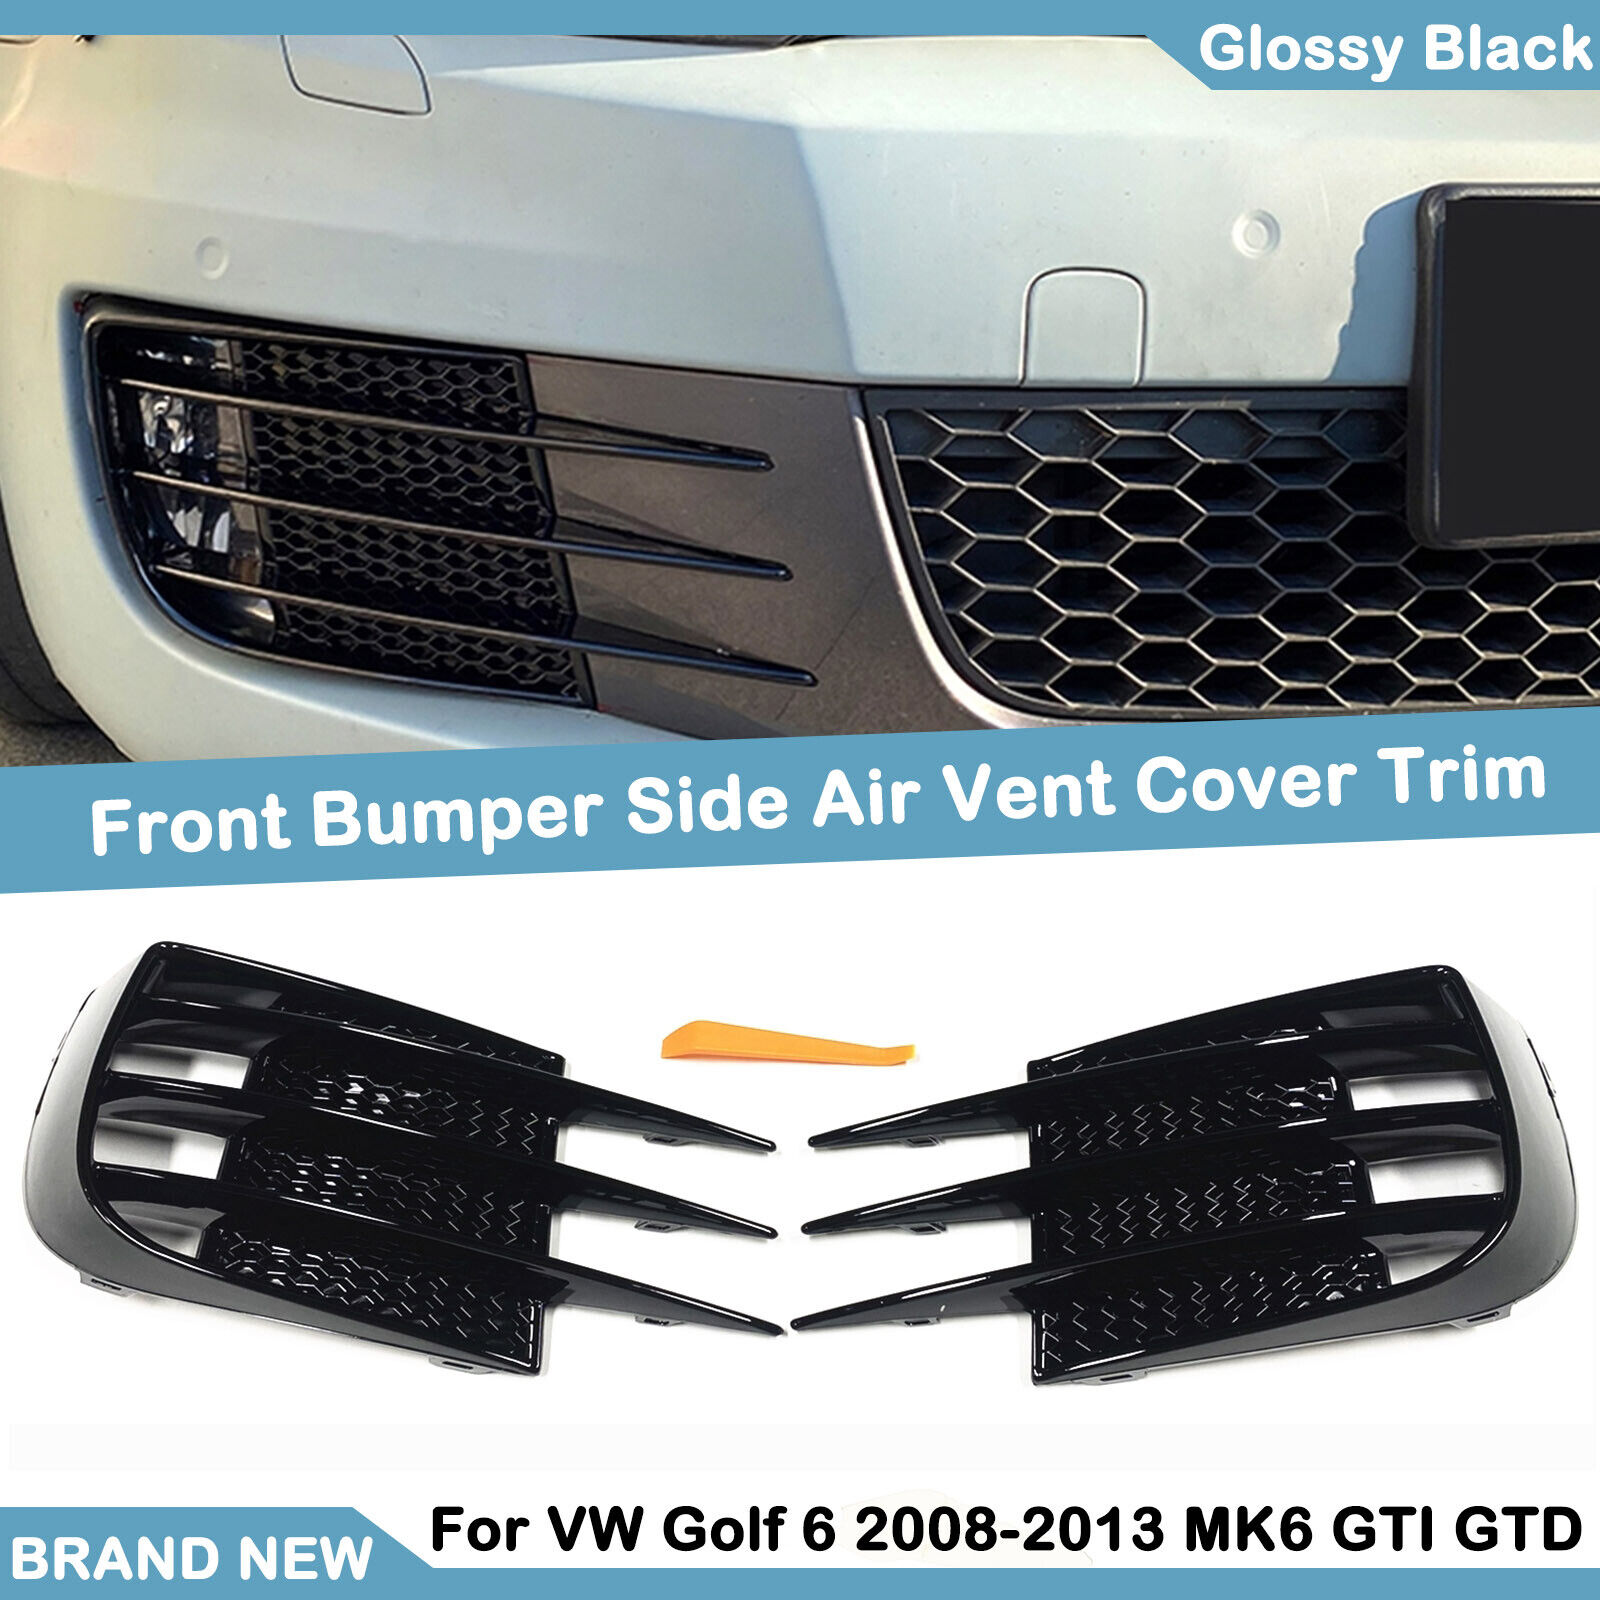 Front Fog Light Grill Cover Kit For VW Golf 6 2008 09-13 MK6 Volkswagen GTI GTD